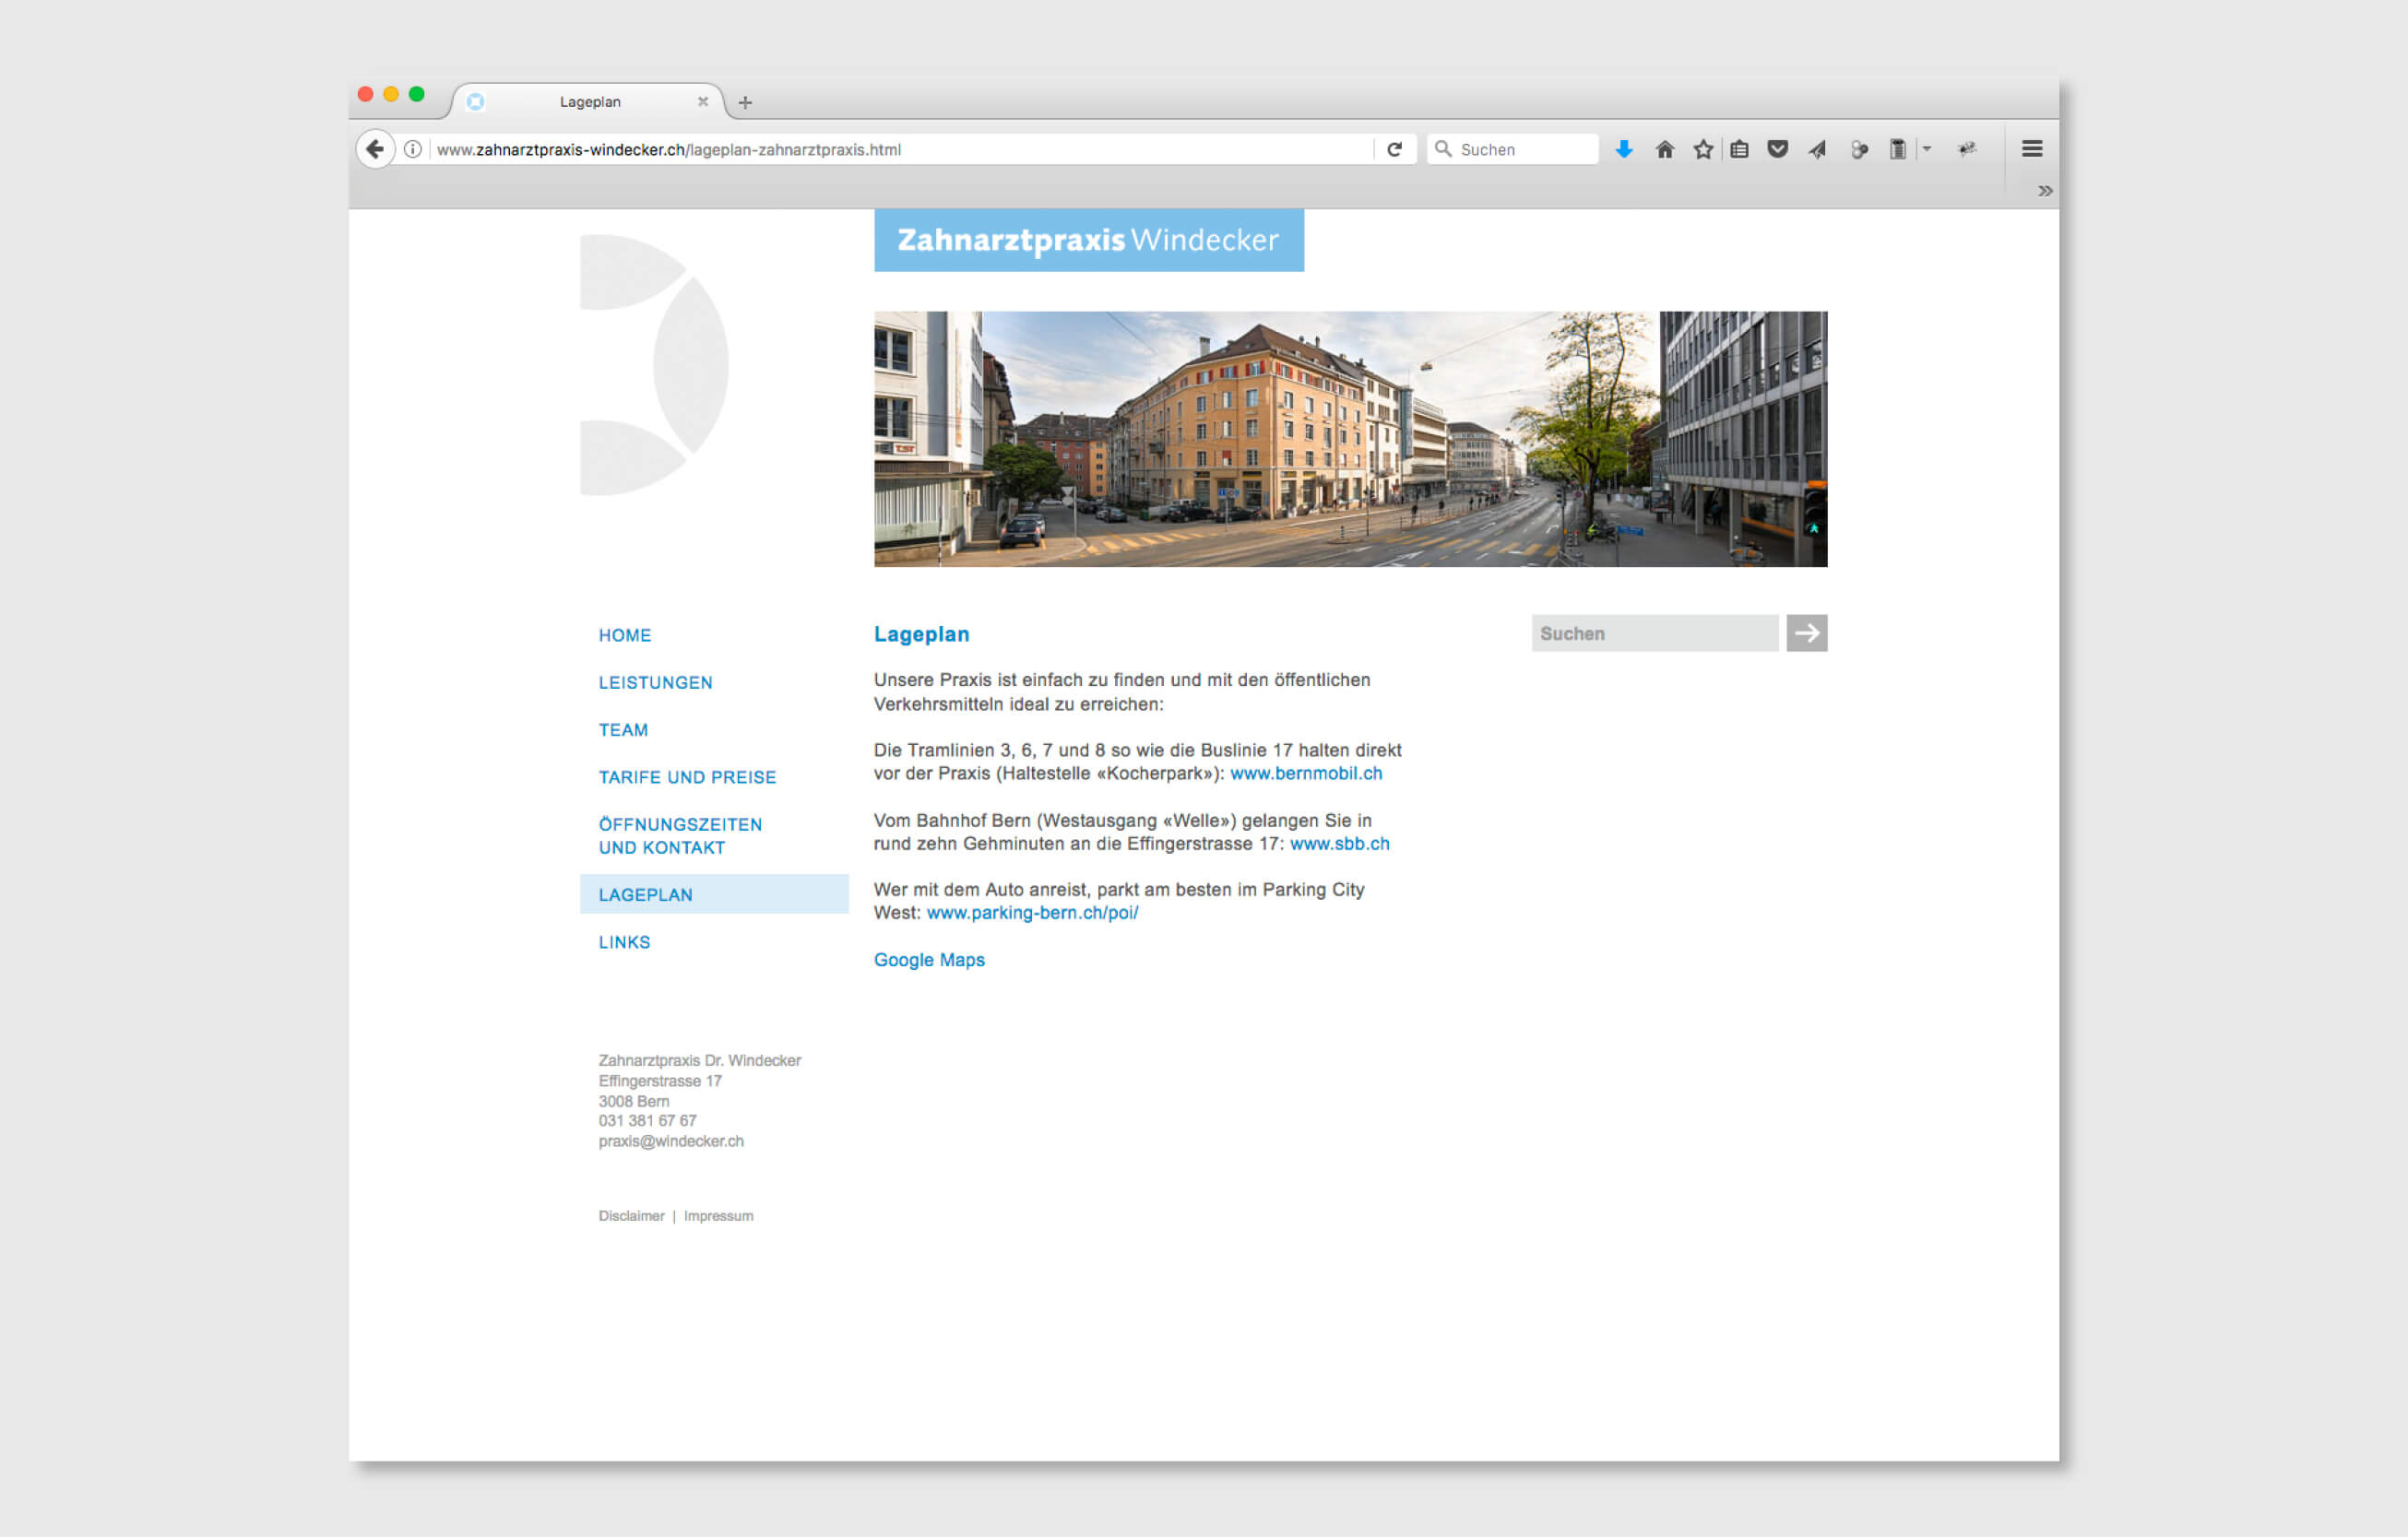 Corporate Identity für Zahnarztpraxis Dr. Windecker Webdesign by consign | Agentur für Branding und Kommunikation